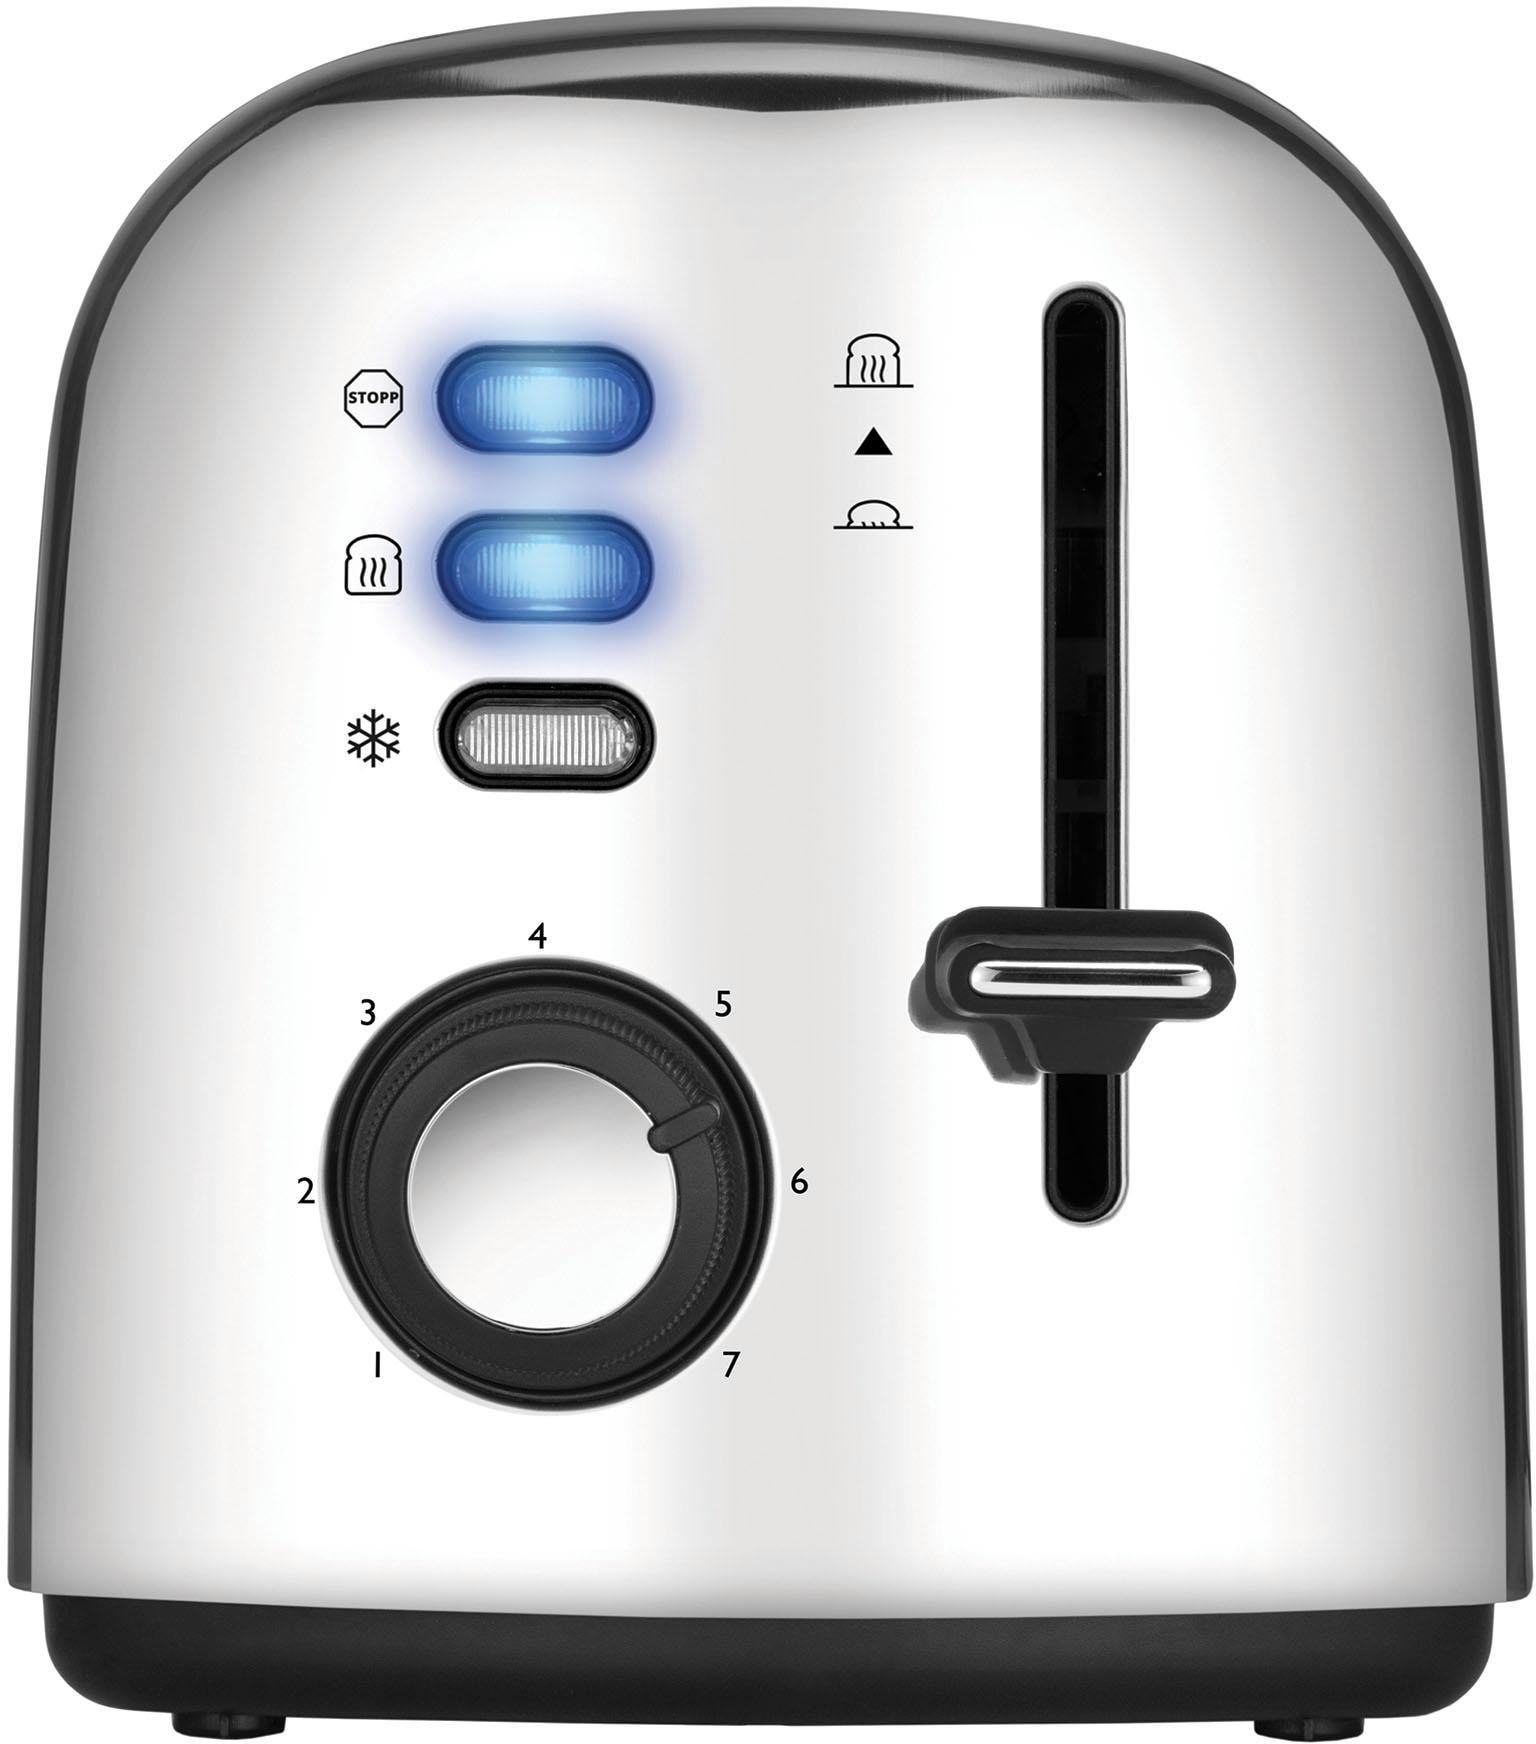 Unold Toaster »4er Retro 38366«, 2 lange Schlitze, 1500 W